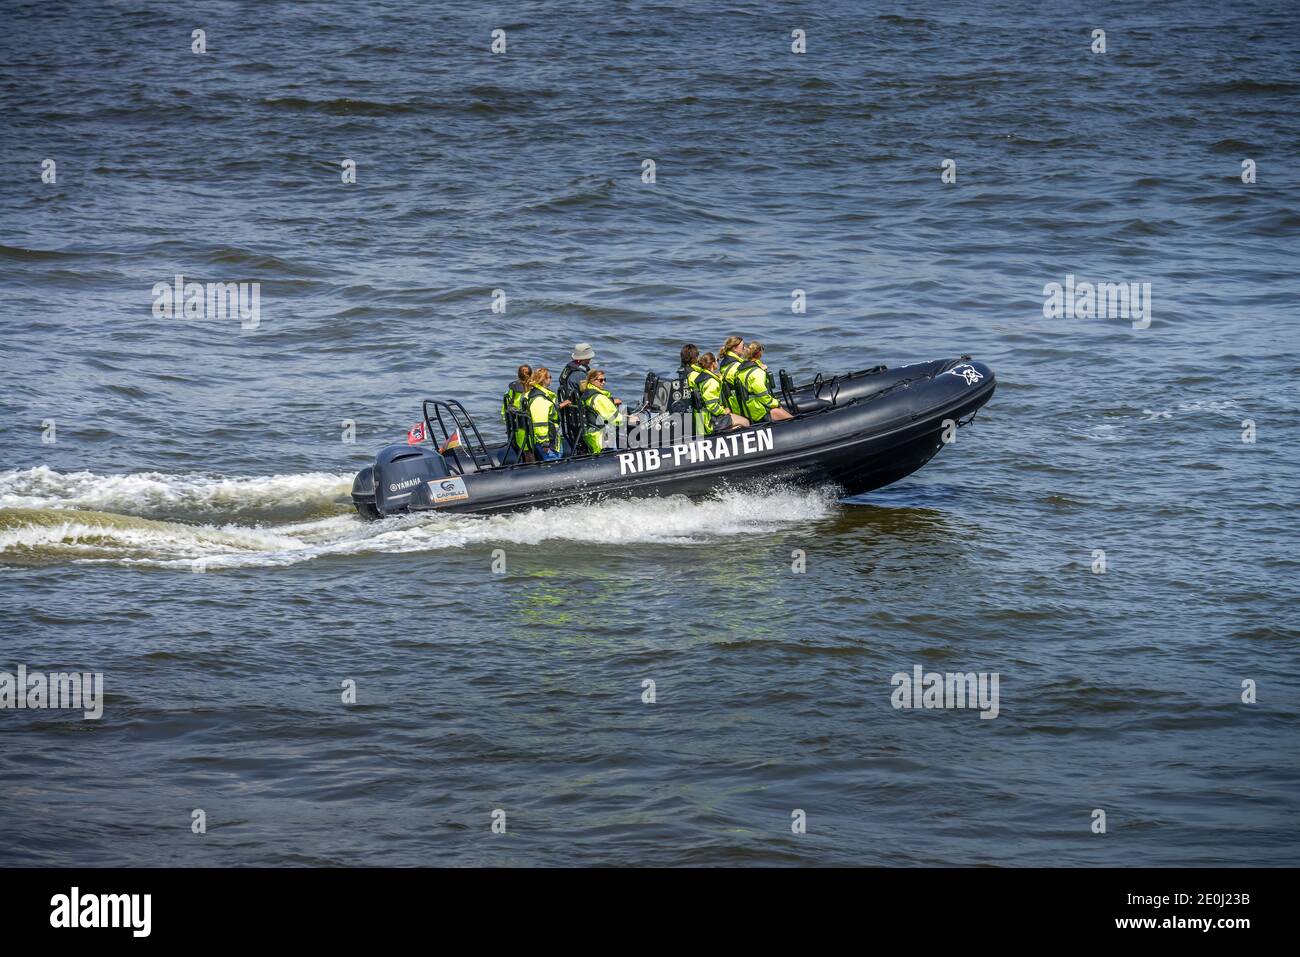 RIB Piraten, Speedboot, Hafenrundfahrt, Elbe, Hamburg, Deutschland Stock Photo